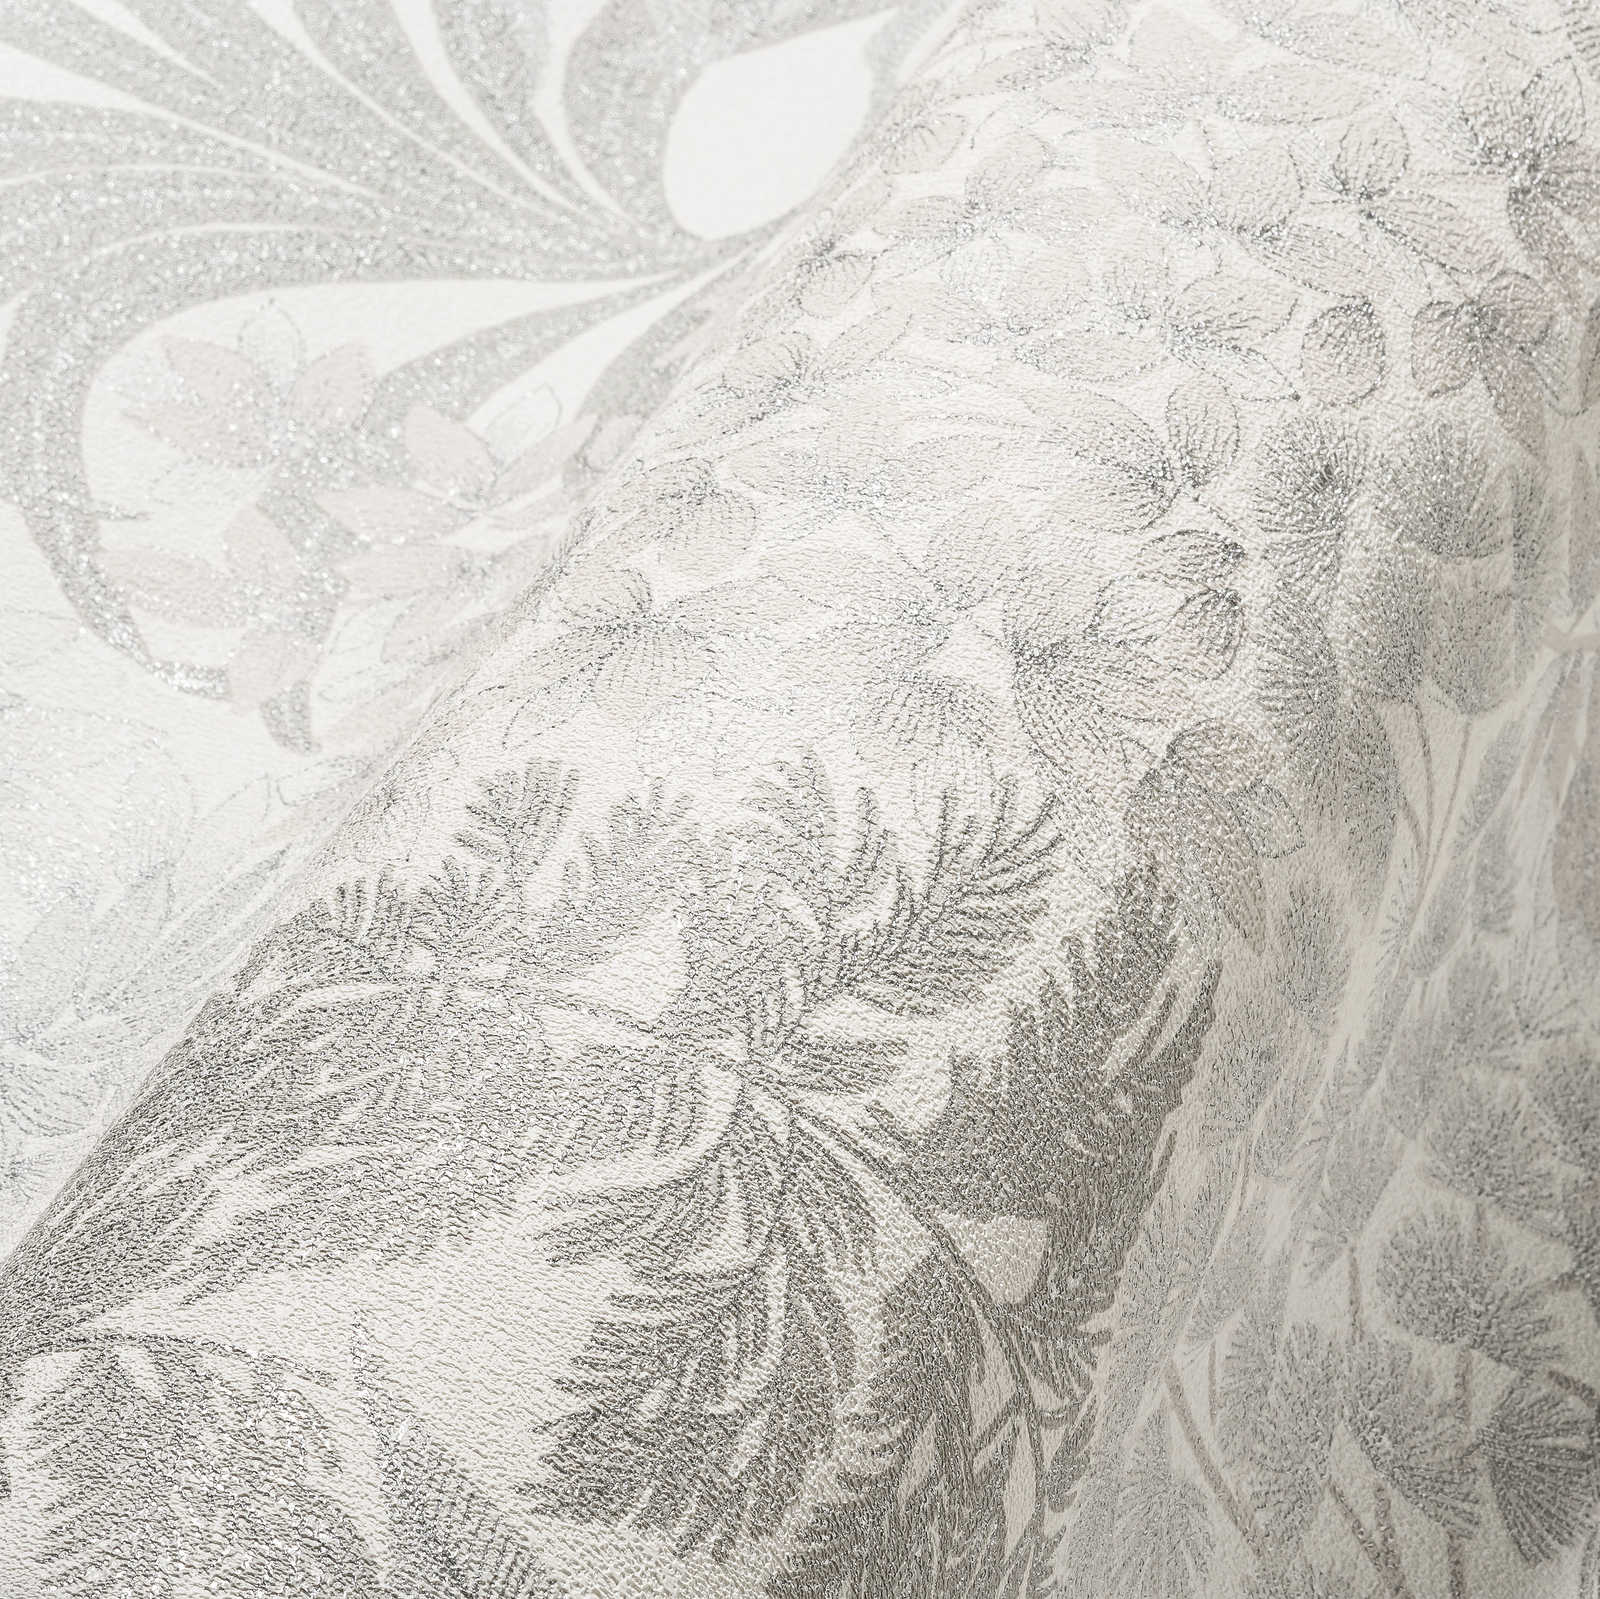             Papier peint fleuri légèrement brillant de couleur discrète - blanc, gris, argenté
        